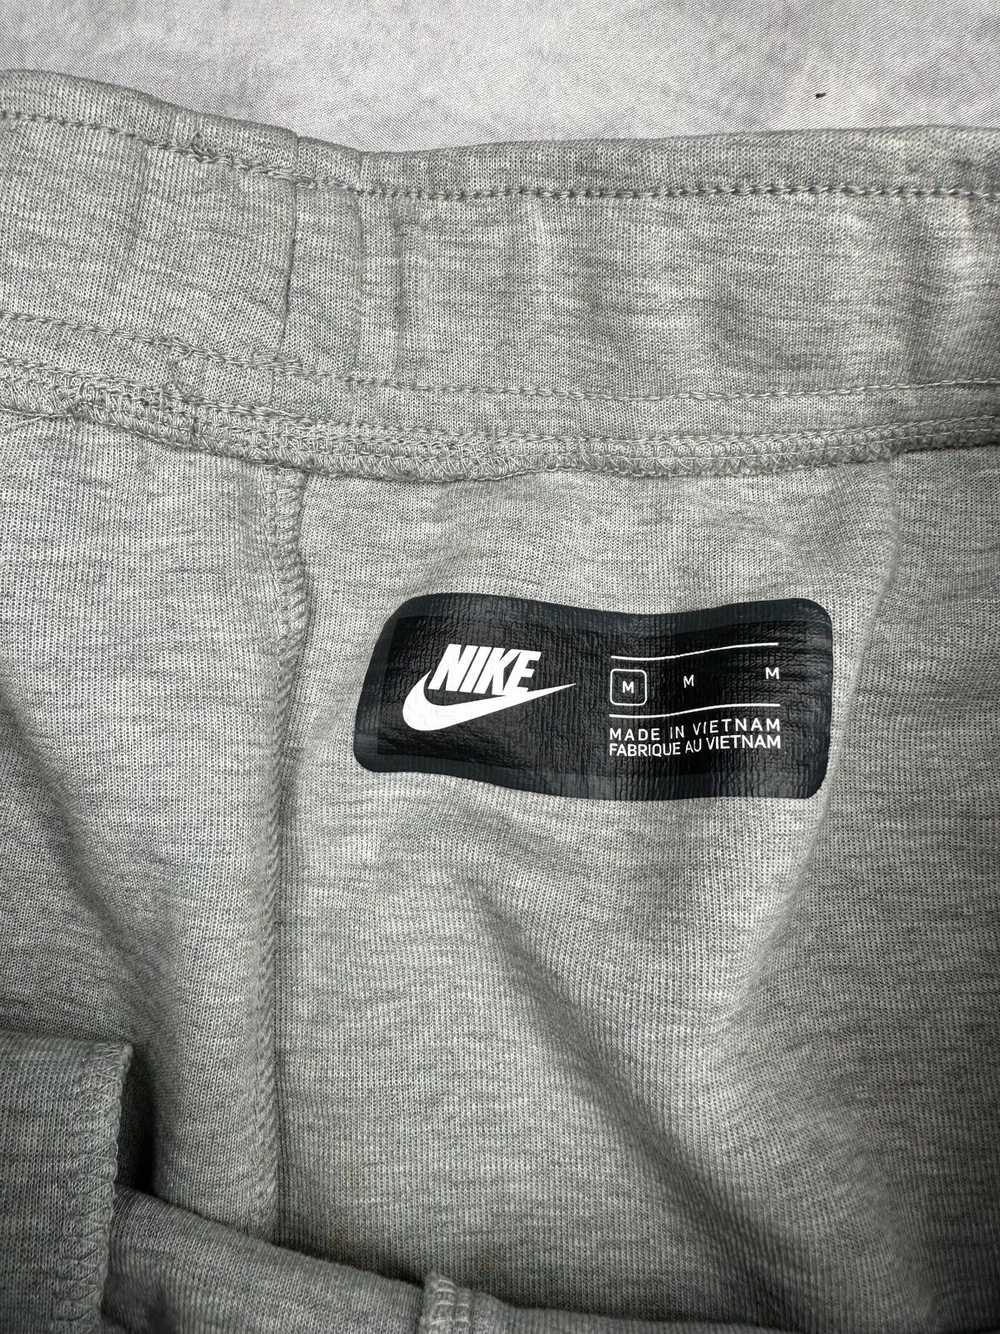 Nike × Streetwear × Vintage Nike Tech Fleece - image 4